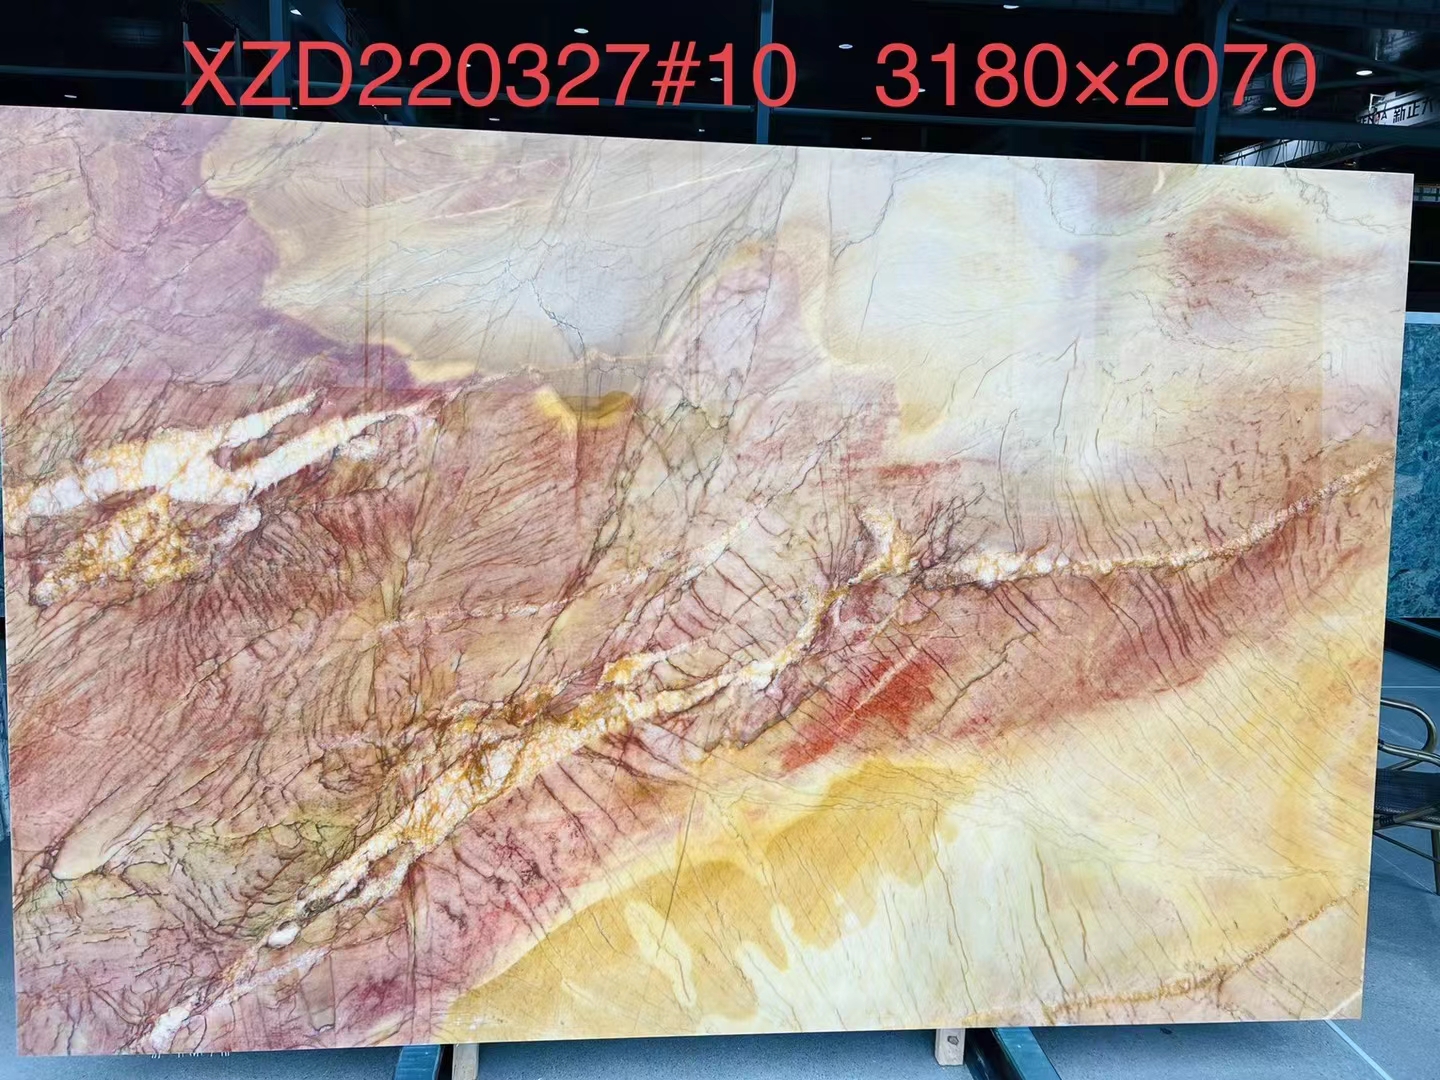 XZD220327彩虹印象-新正大奢石